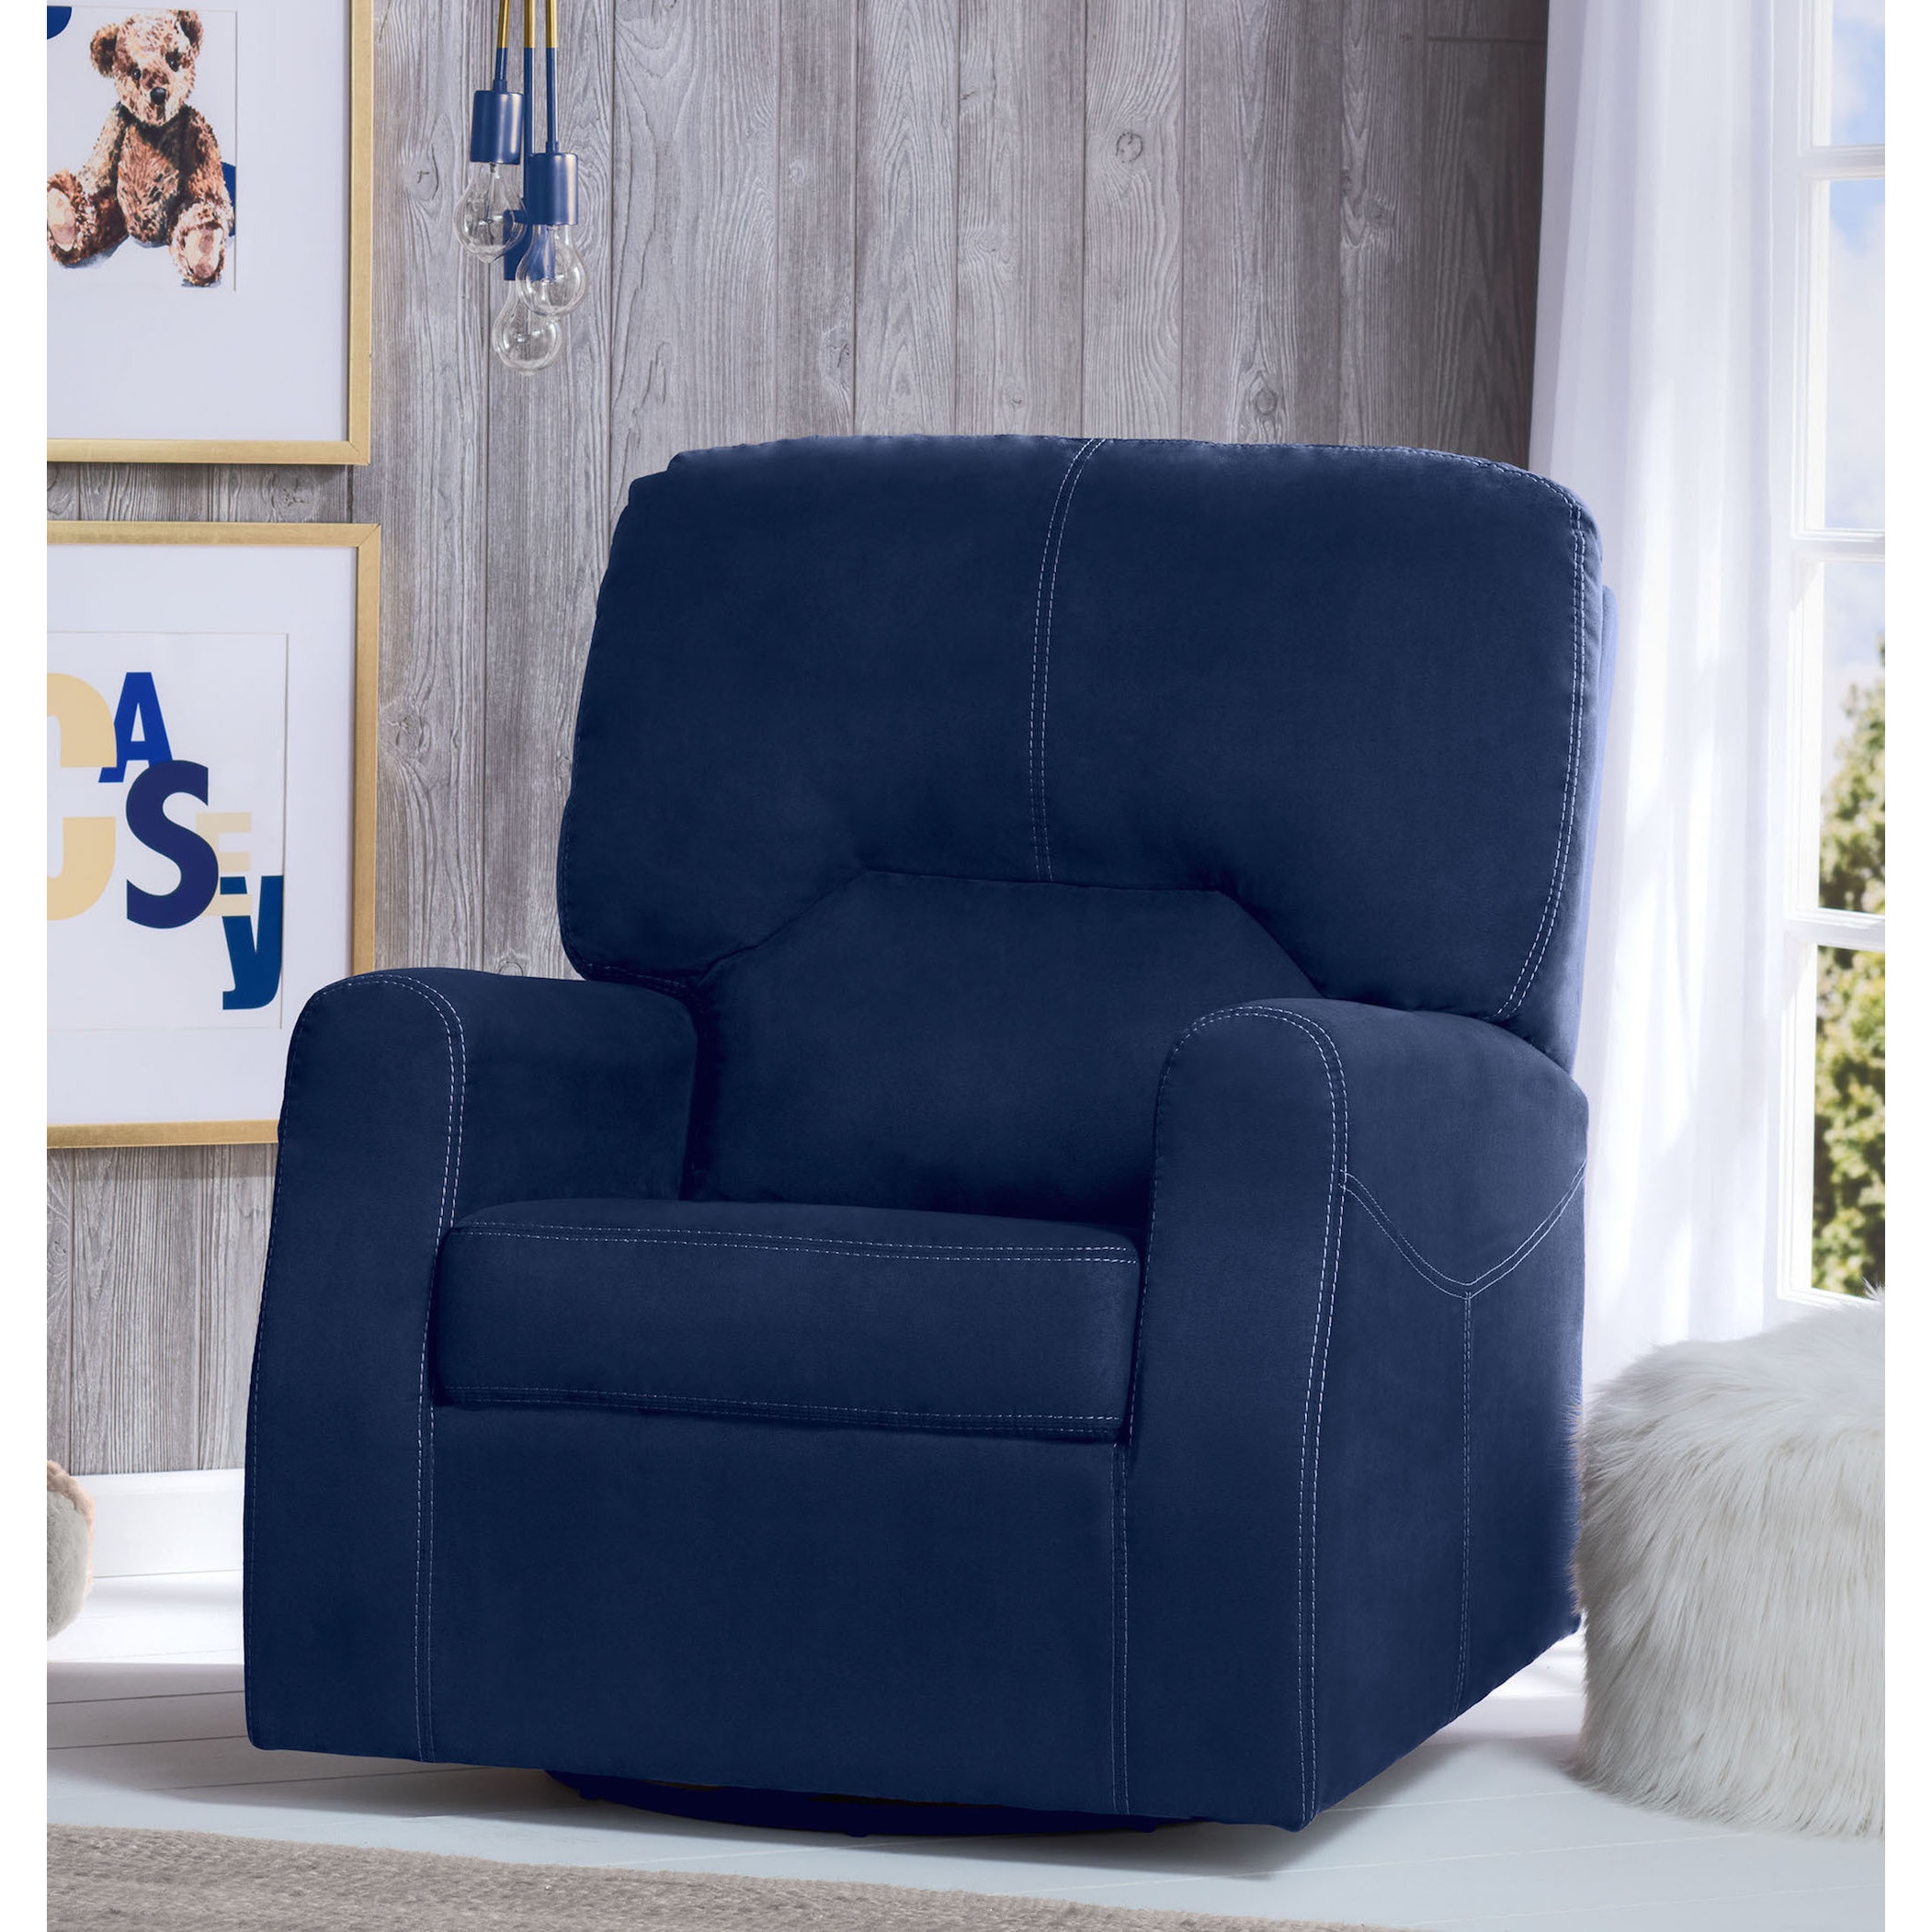 navy blue nursery chair